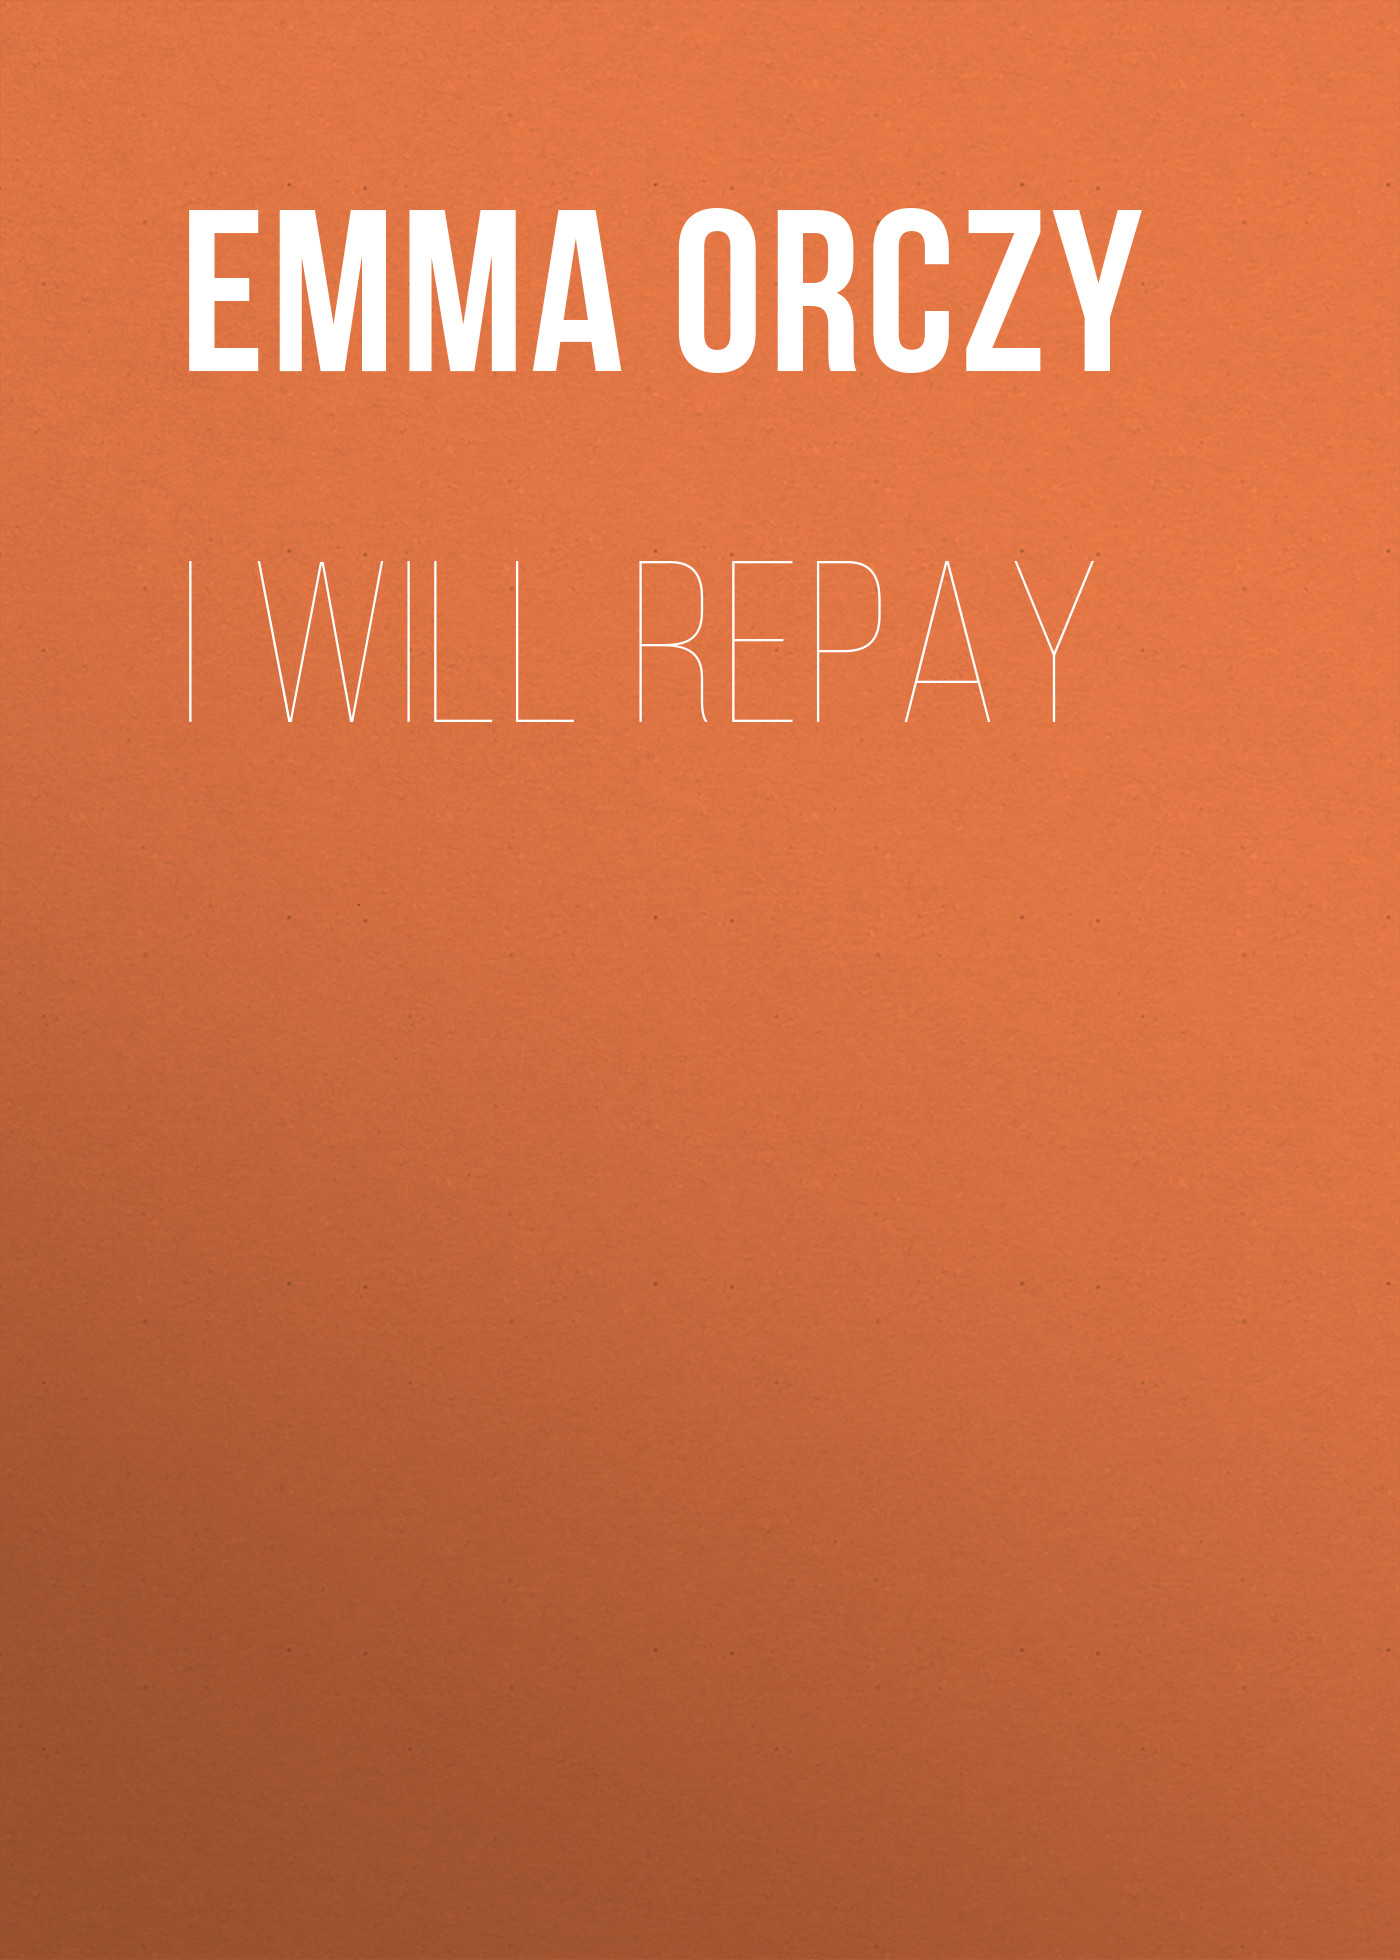 Книга I Will Repay из серии , созданная Emma Orczy, может относится к жанру Историческая фантастика, Исторические приключения. Стоимость электронной книги I Will Repay с идентификатором 34841342 составляет 0 руб.